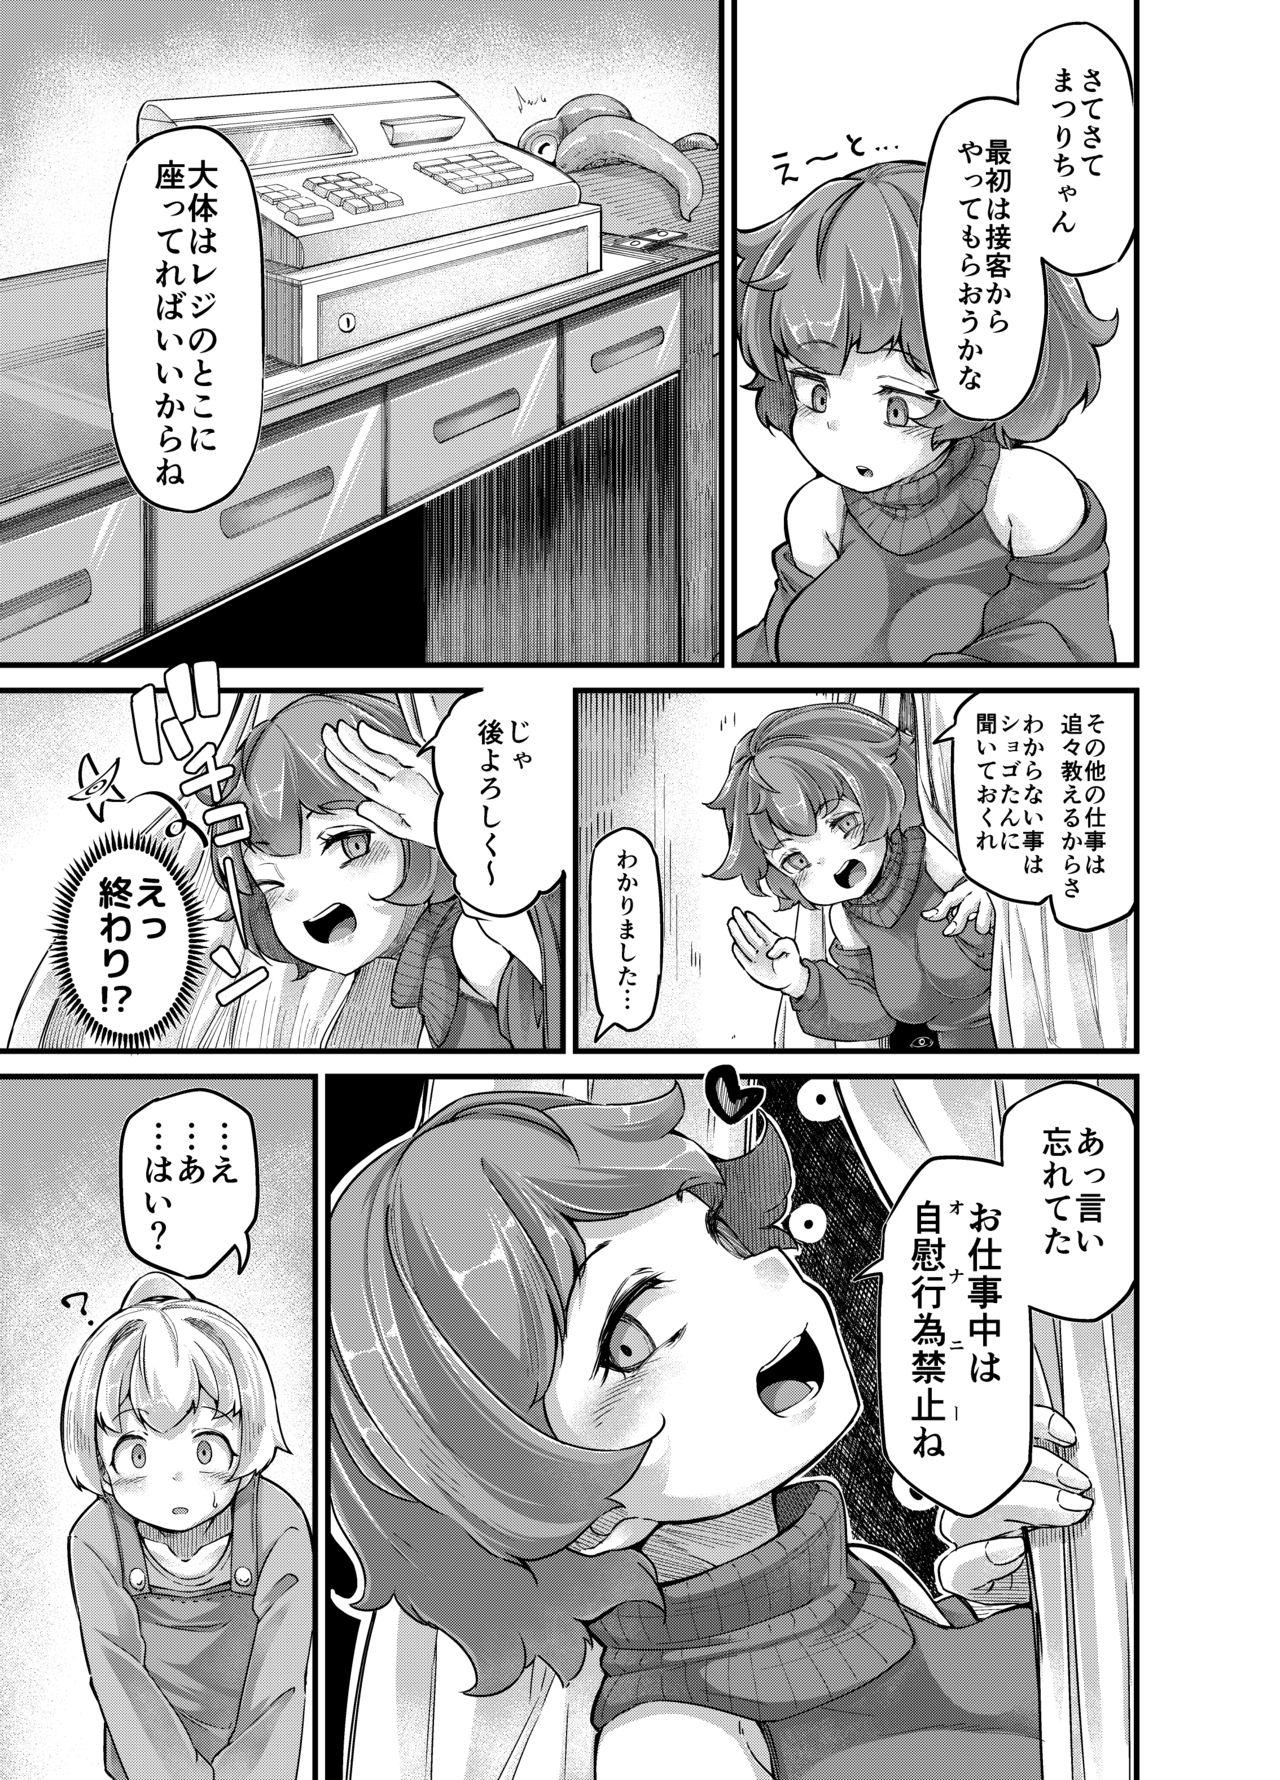 Bare Anata no Machi no Shokushuya-san 4 - Original Police - Page 11